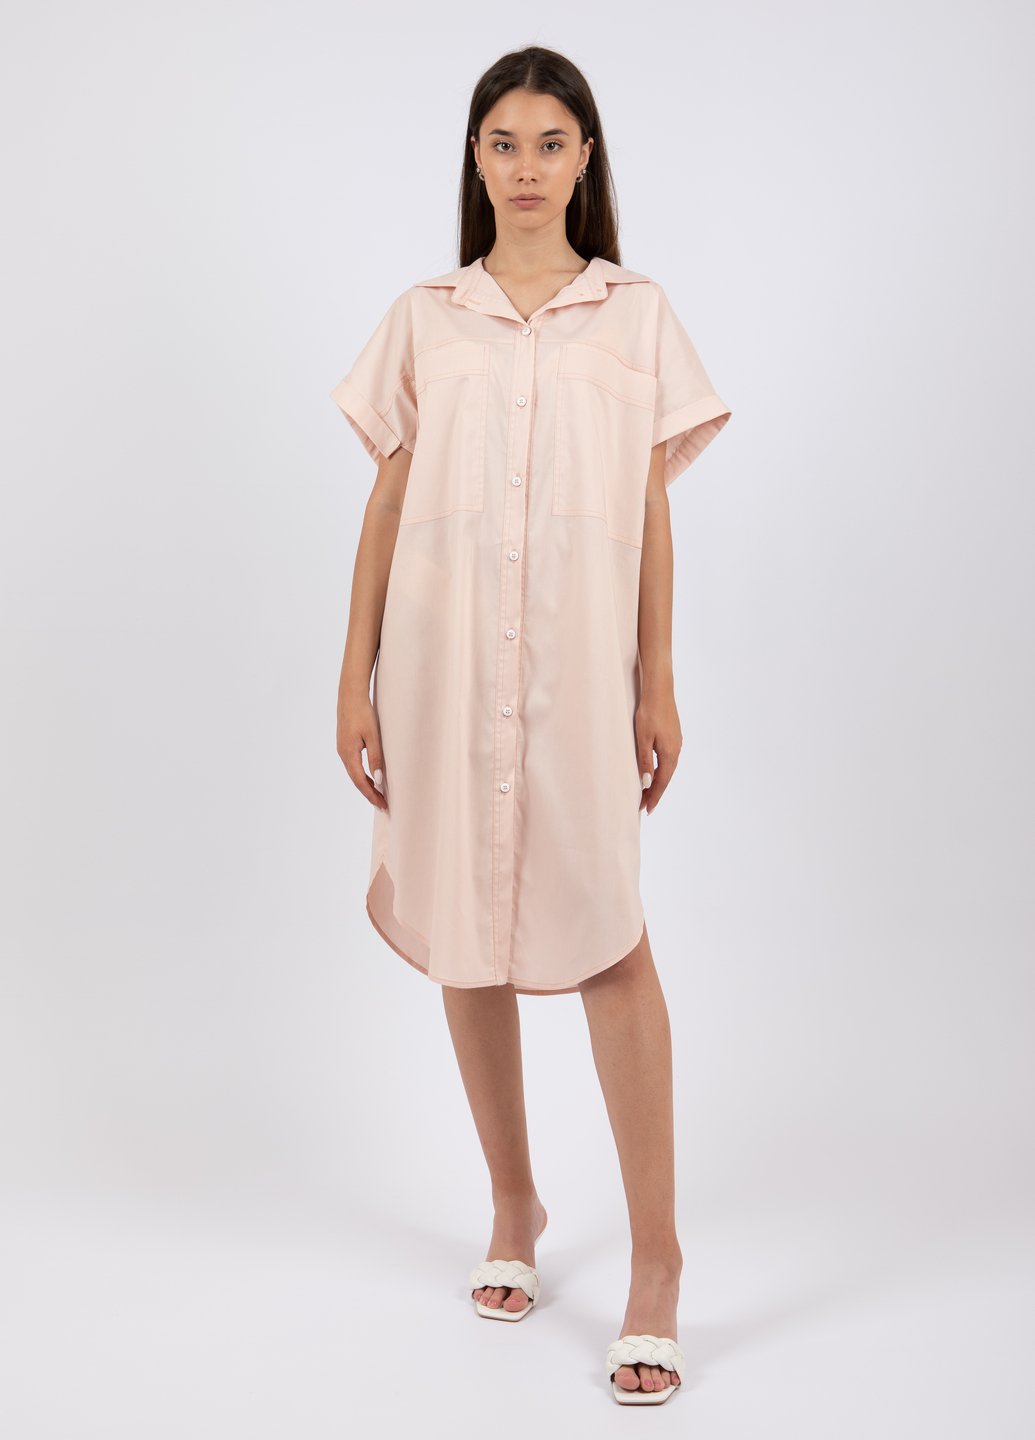 Купить Оверсайз хлопковое платье-рубашка Merlini Руан 700000006 - Персиковый, 42-44 в интернет-магазине